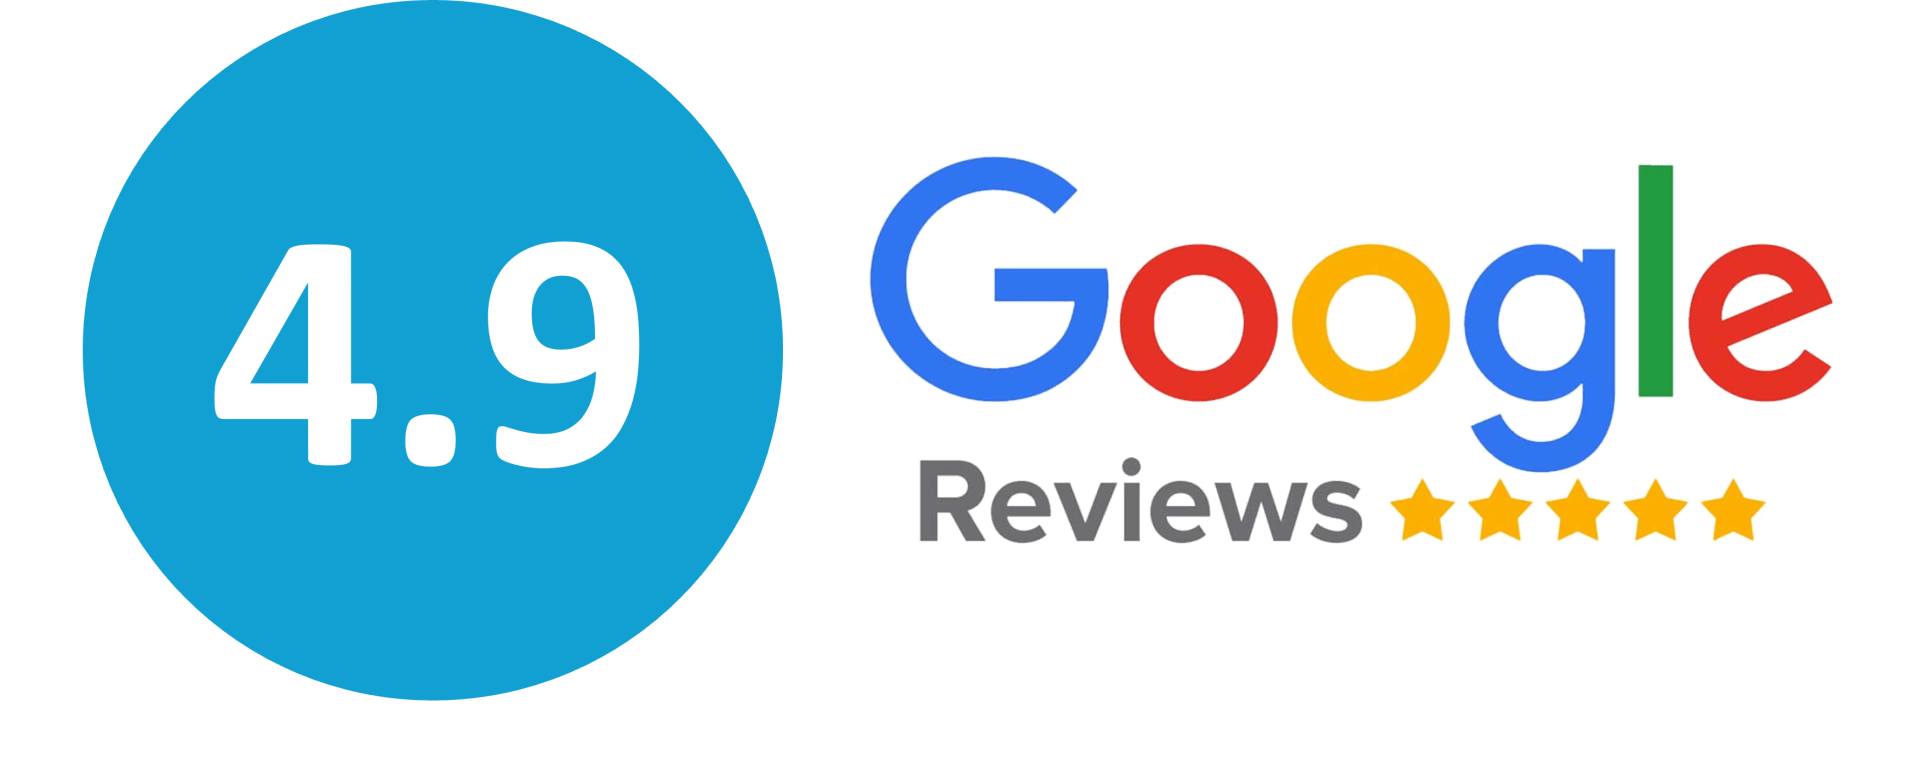 Classificação Google Reviews